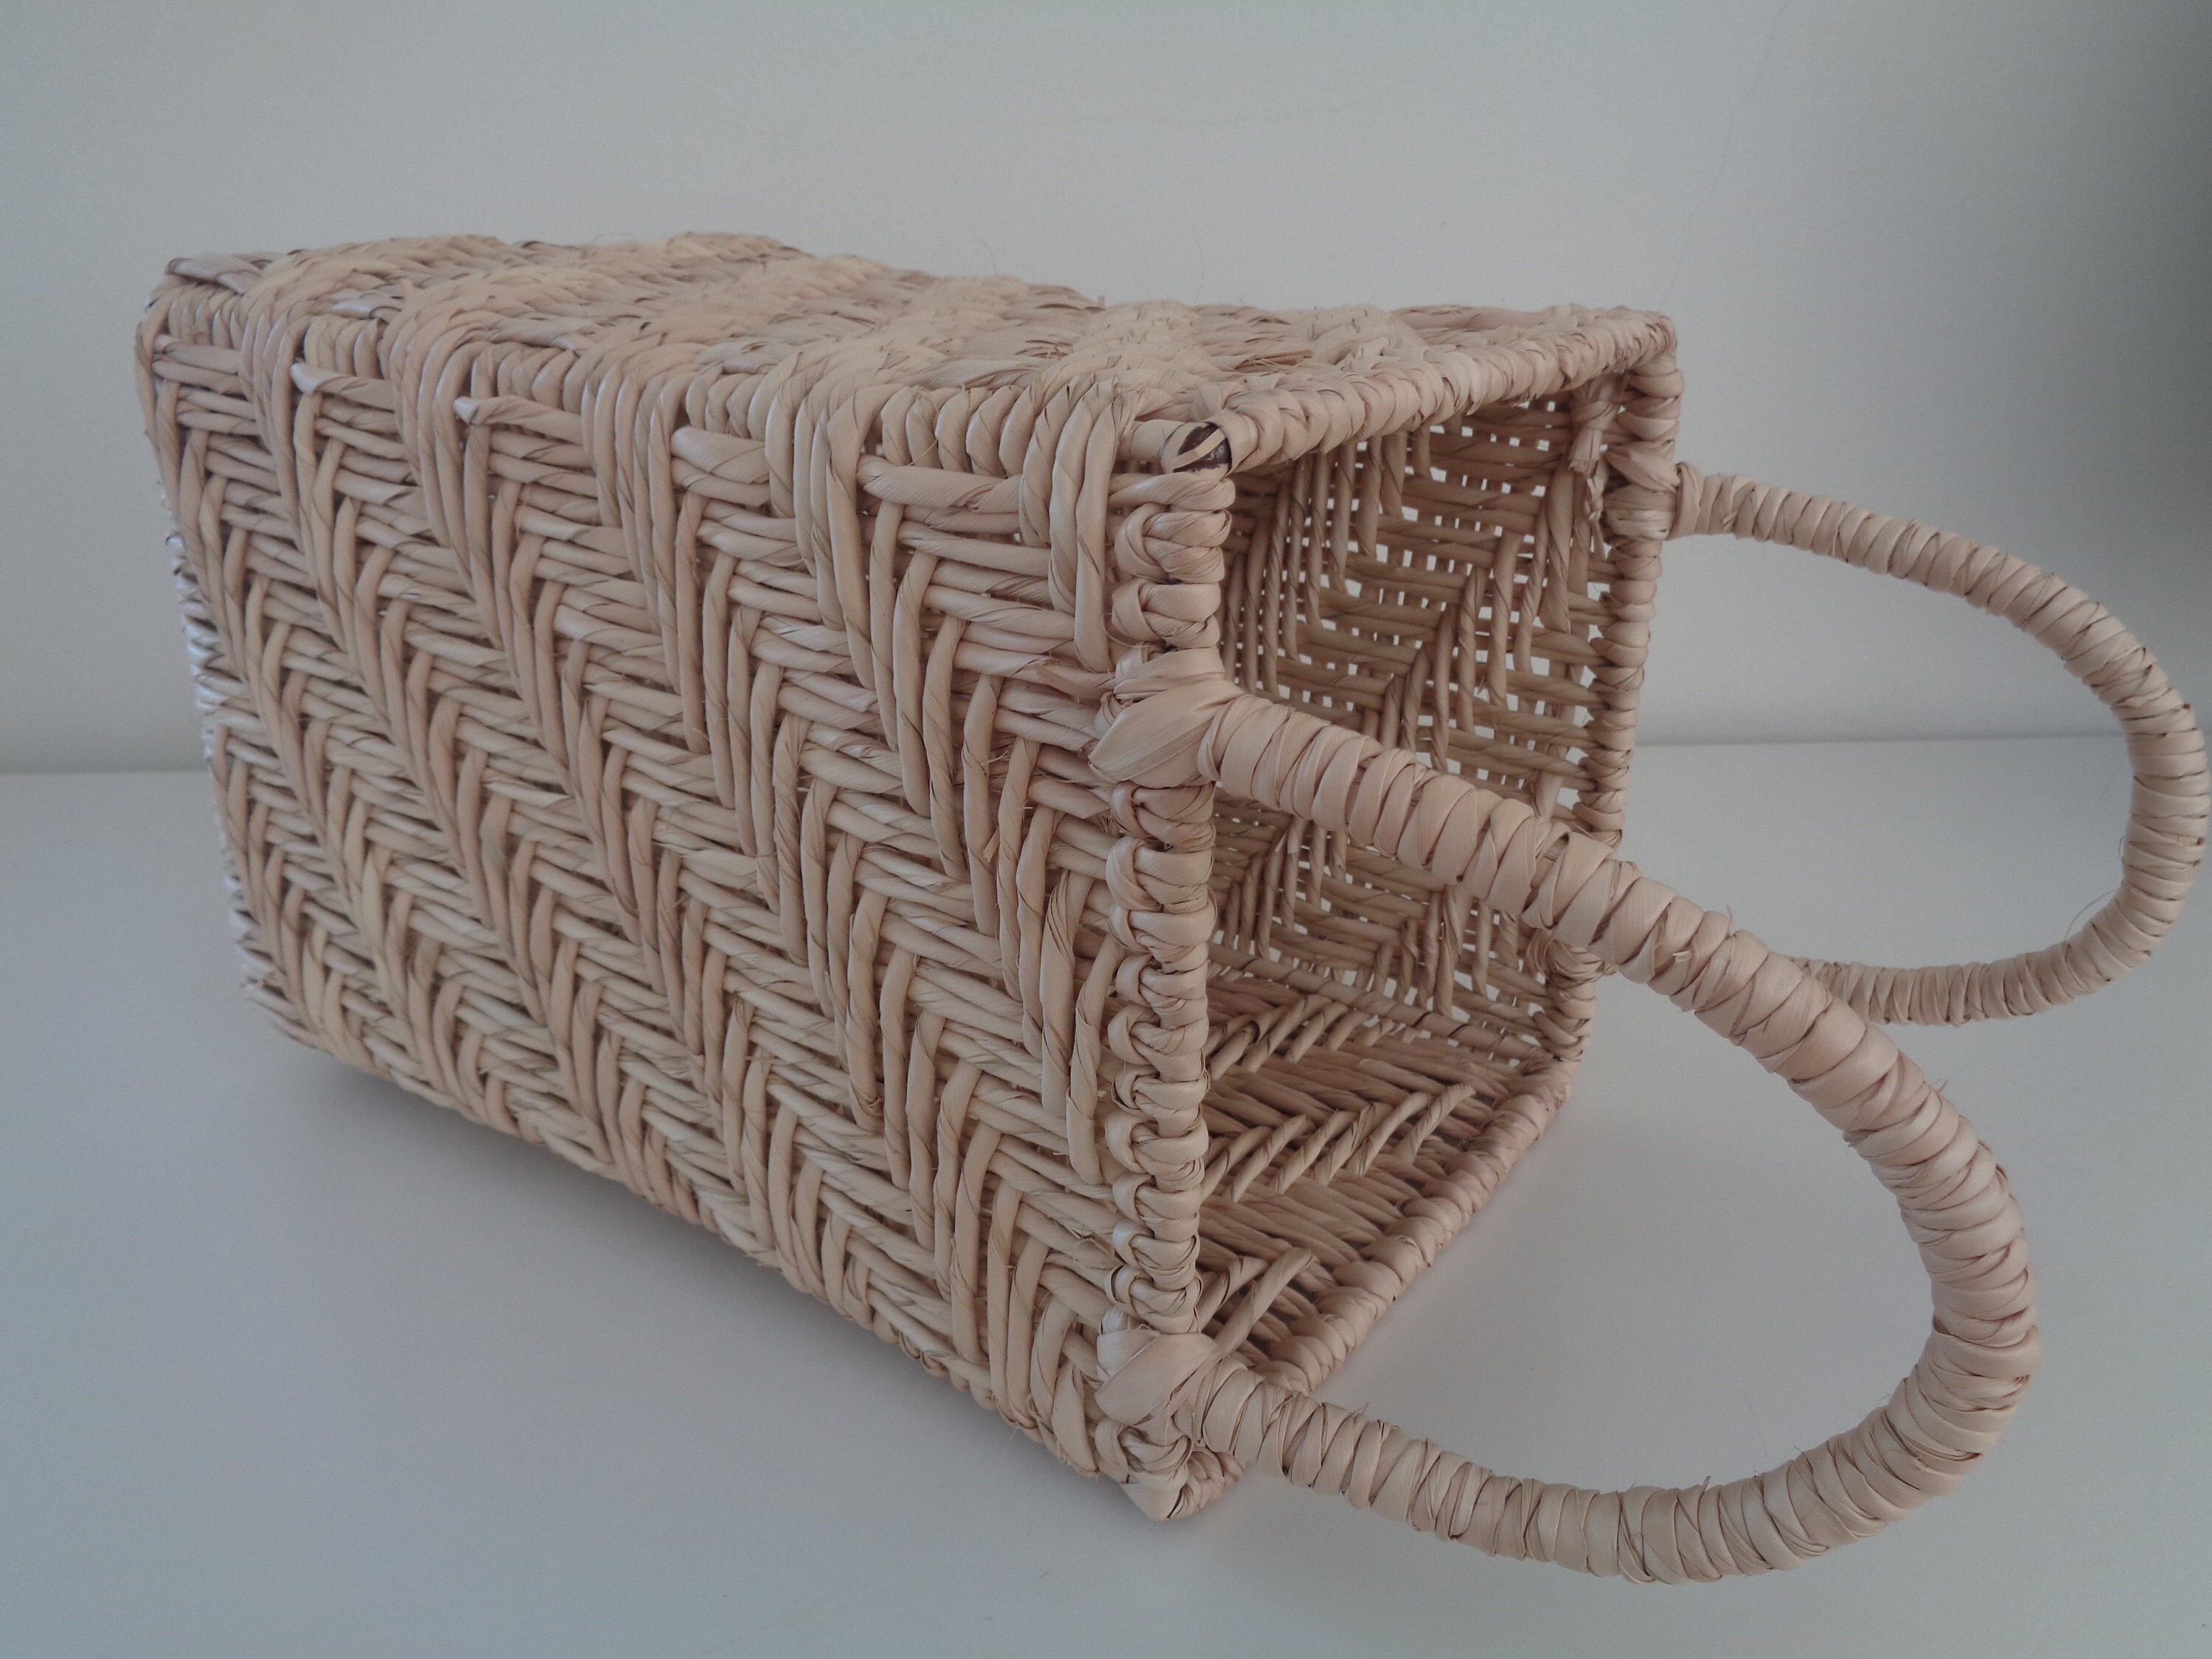 Lattice Design Palm Leaf Basket w/Handles / Natural Weave | Etsy